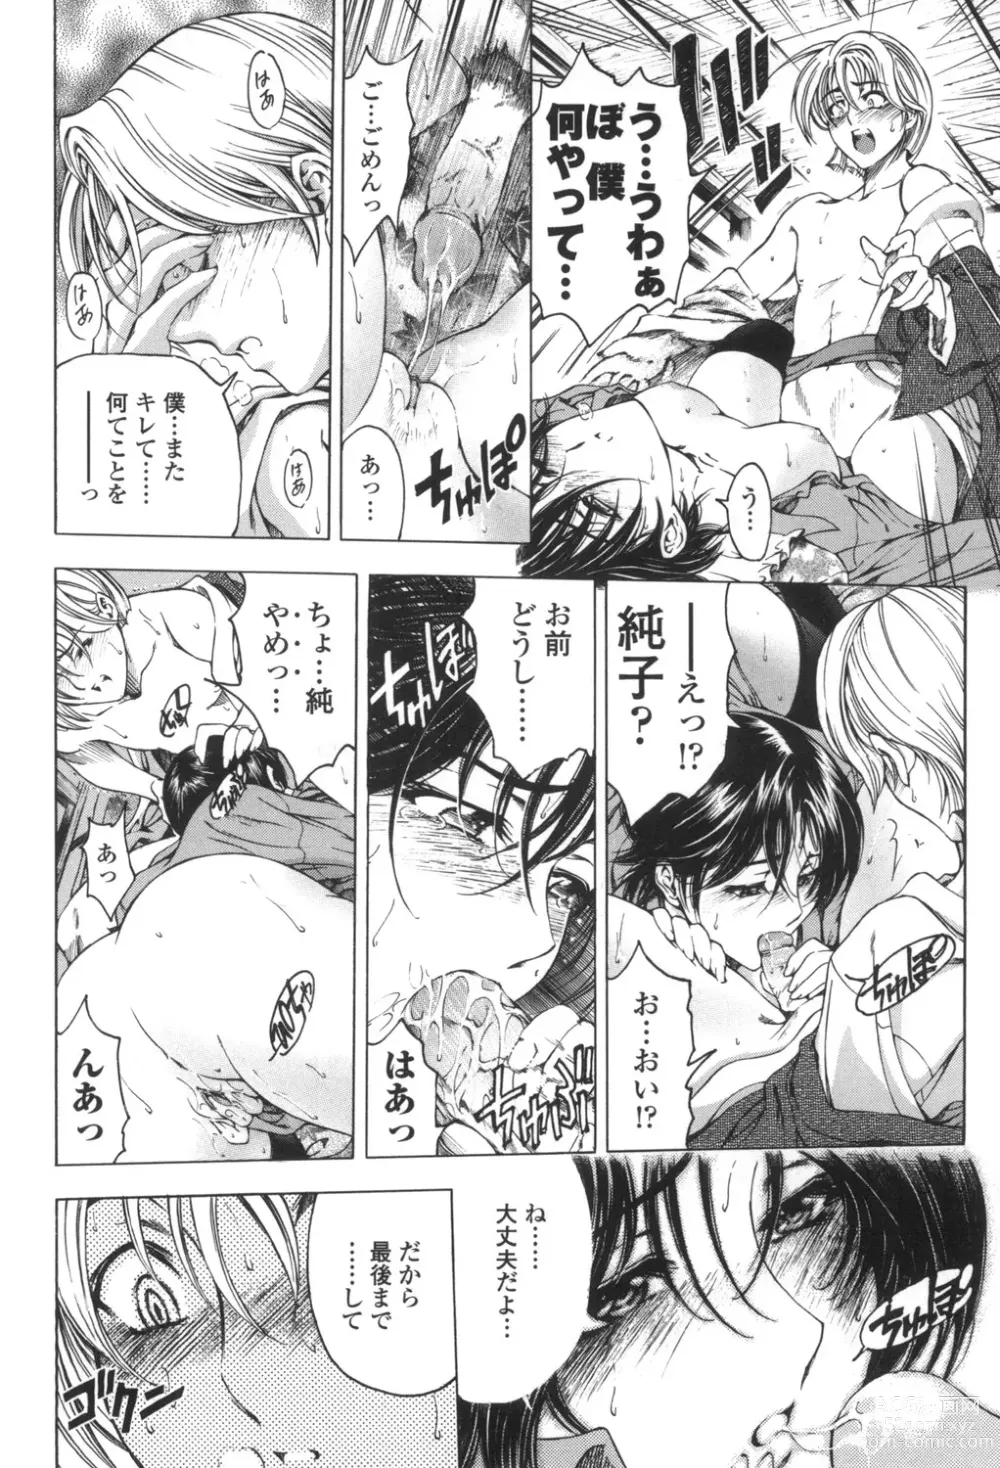 Page 21 of manga Maruimo!?